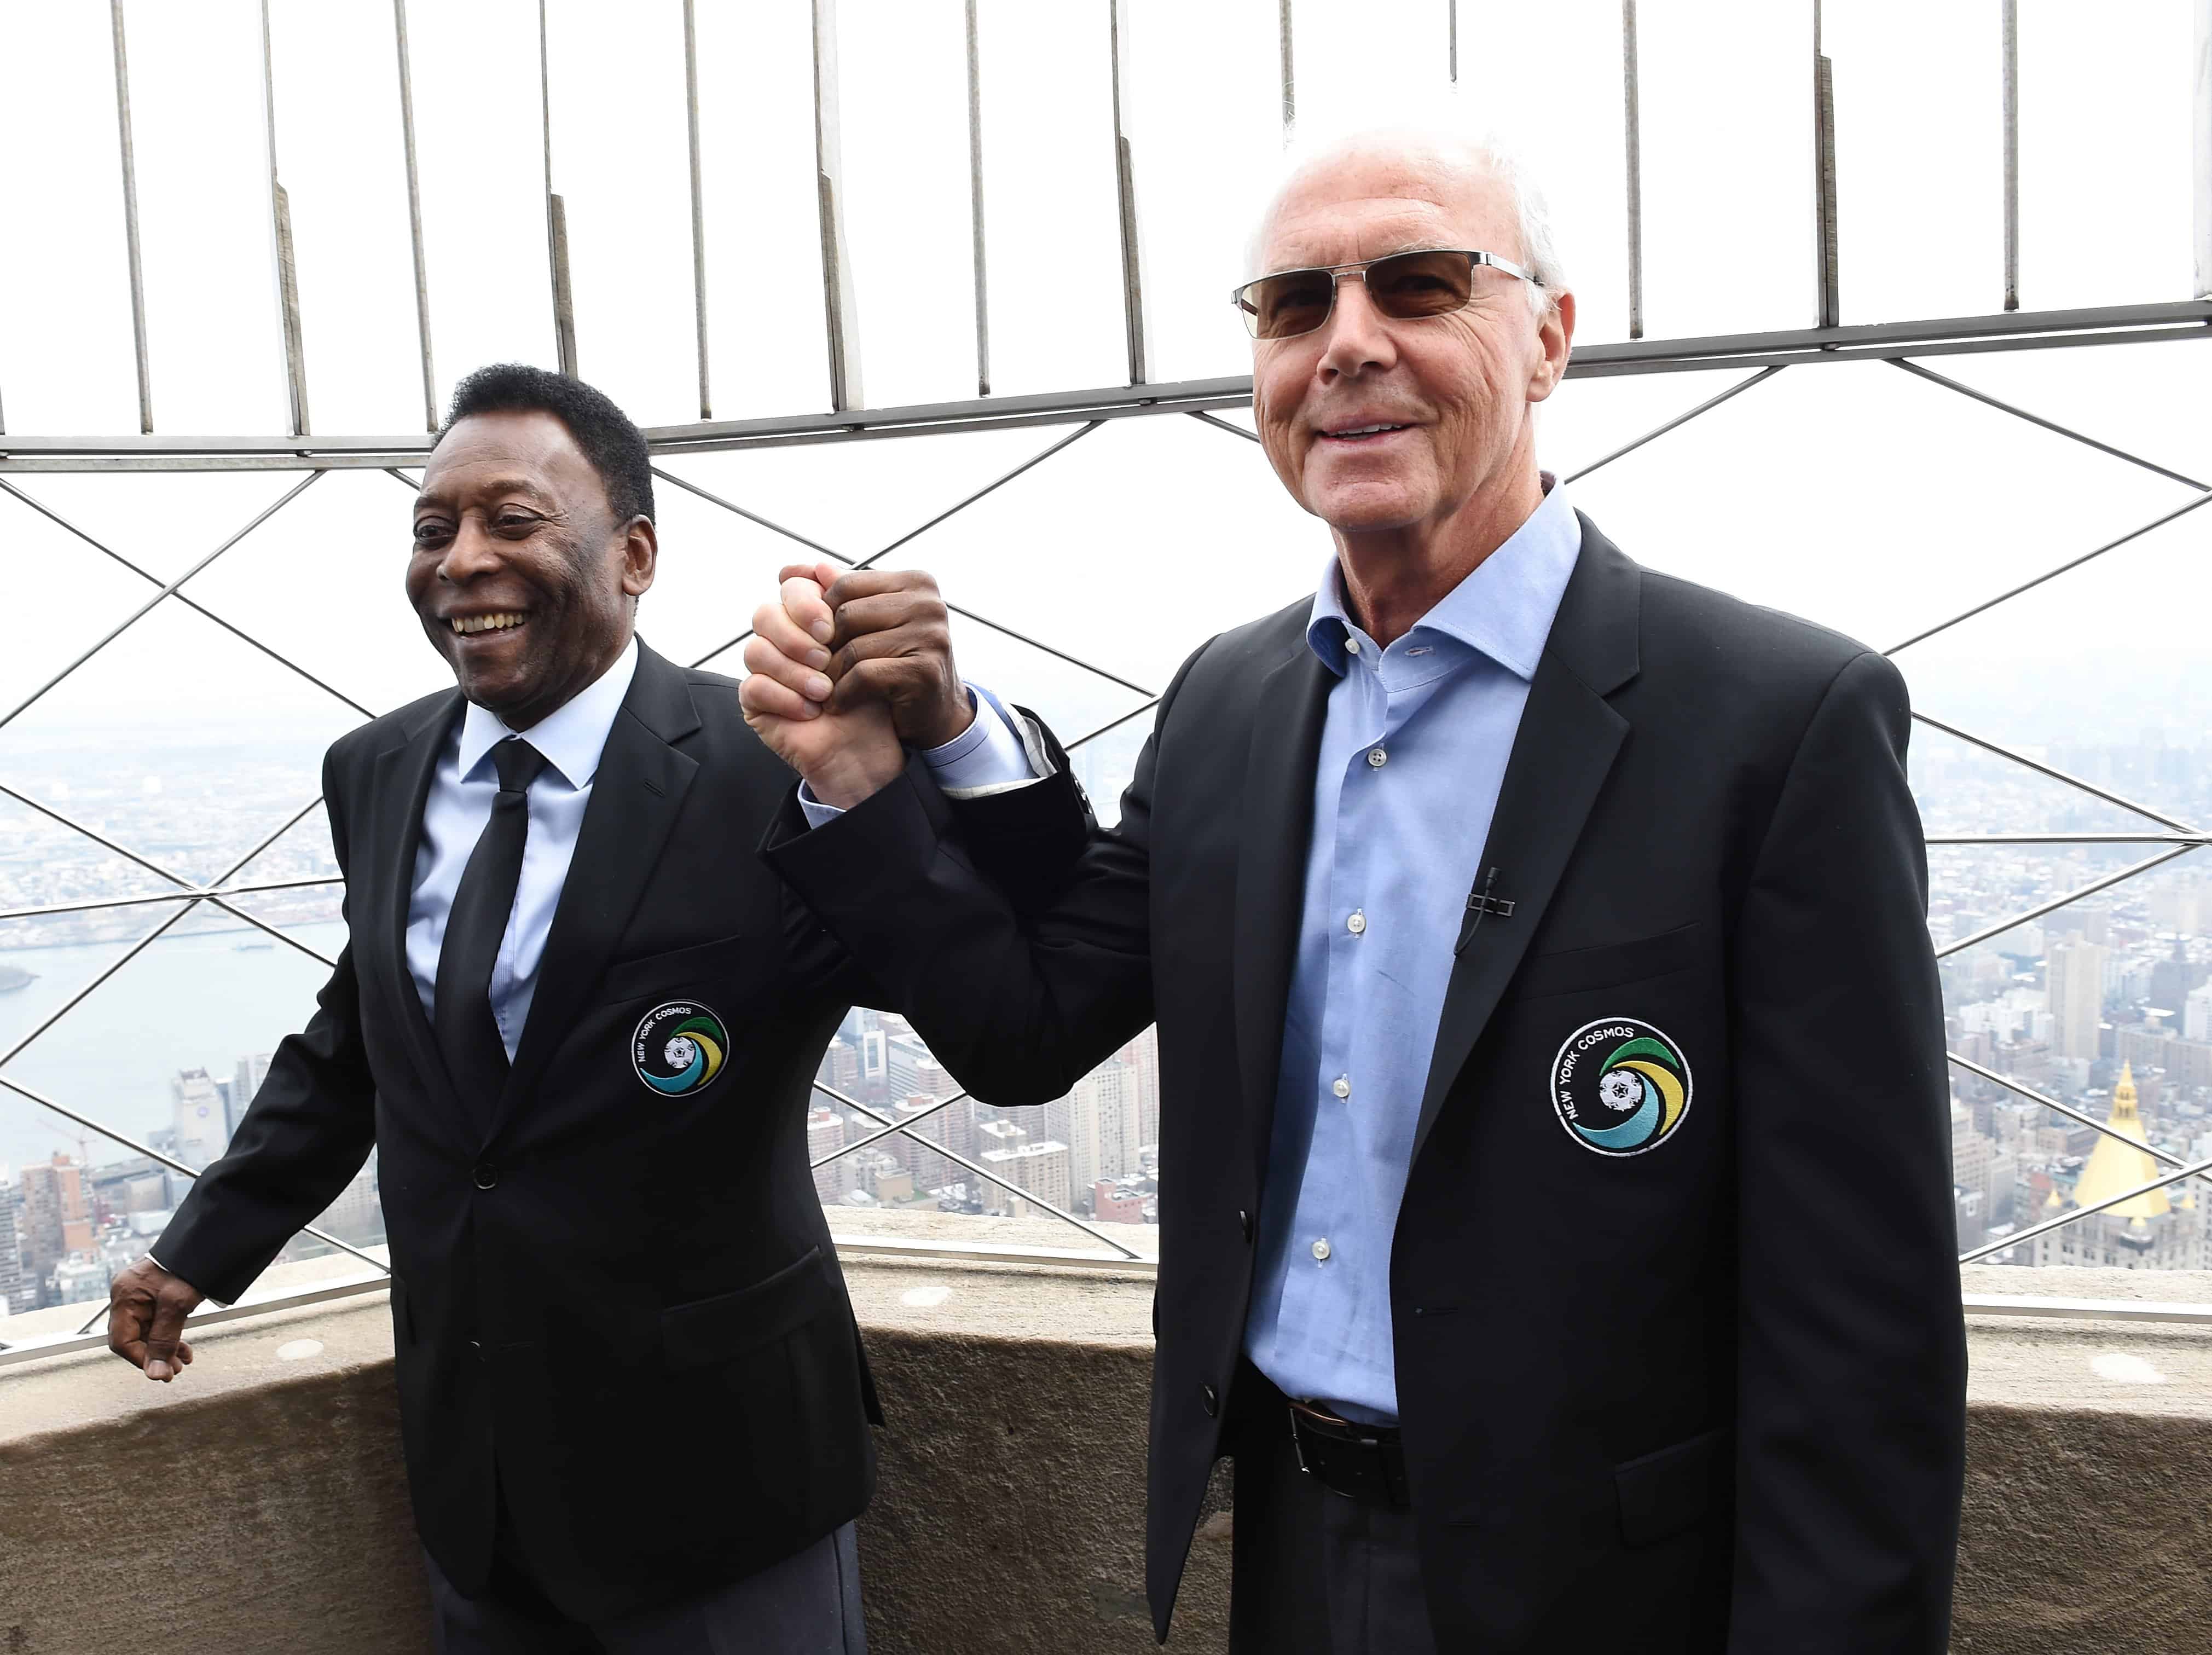 Las leyendas del New York Cosmos, Pelé y Franz Beckenbauer, después de pulsar el interruptor en el Empire State Building el 17 de abril de 2015 para lanzar el inicio de la temporada de primavera 2015 de los equipos. El primer partido de los equipos en casa se llevará a cabo contra los Tampa Bay Rowdies.